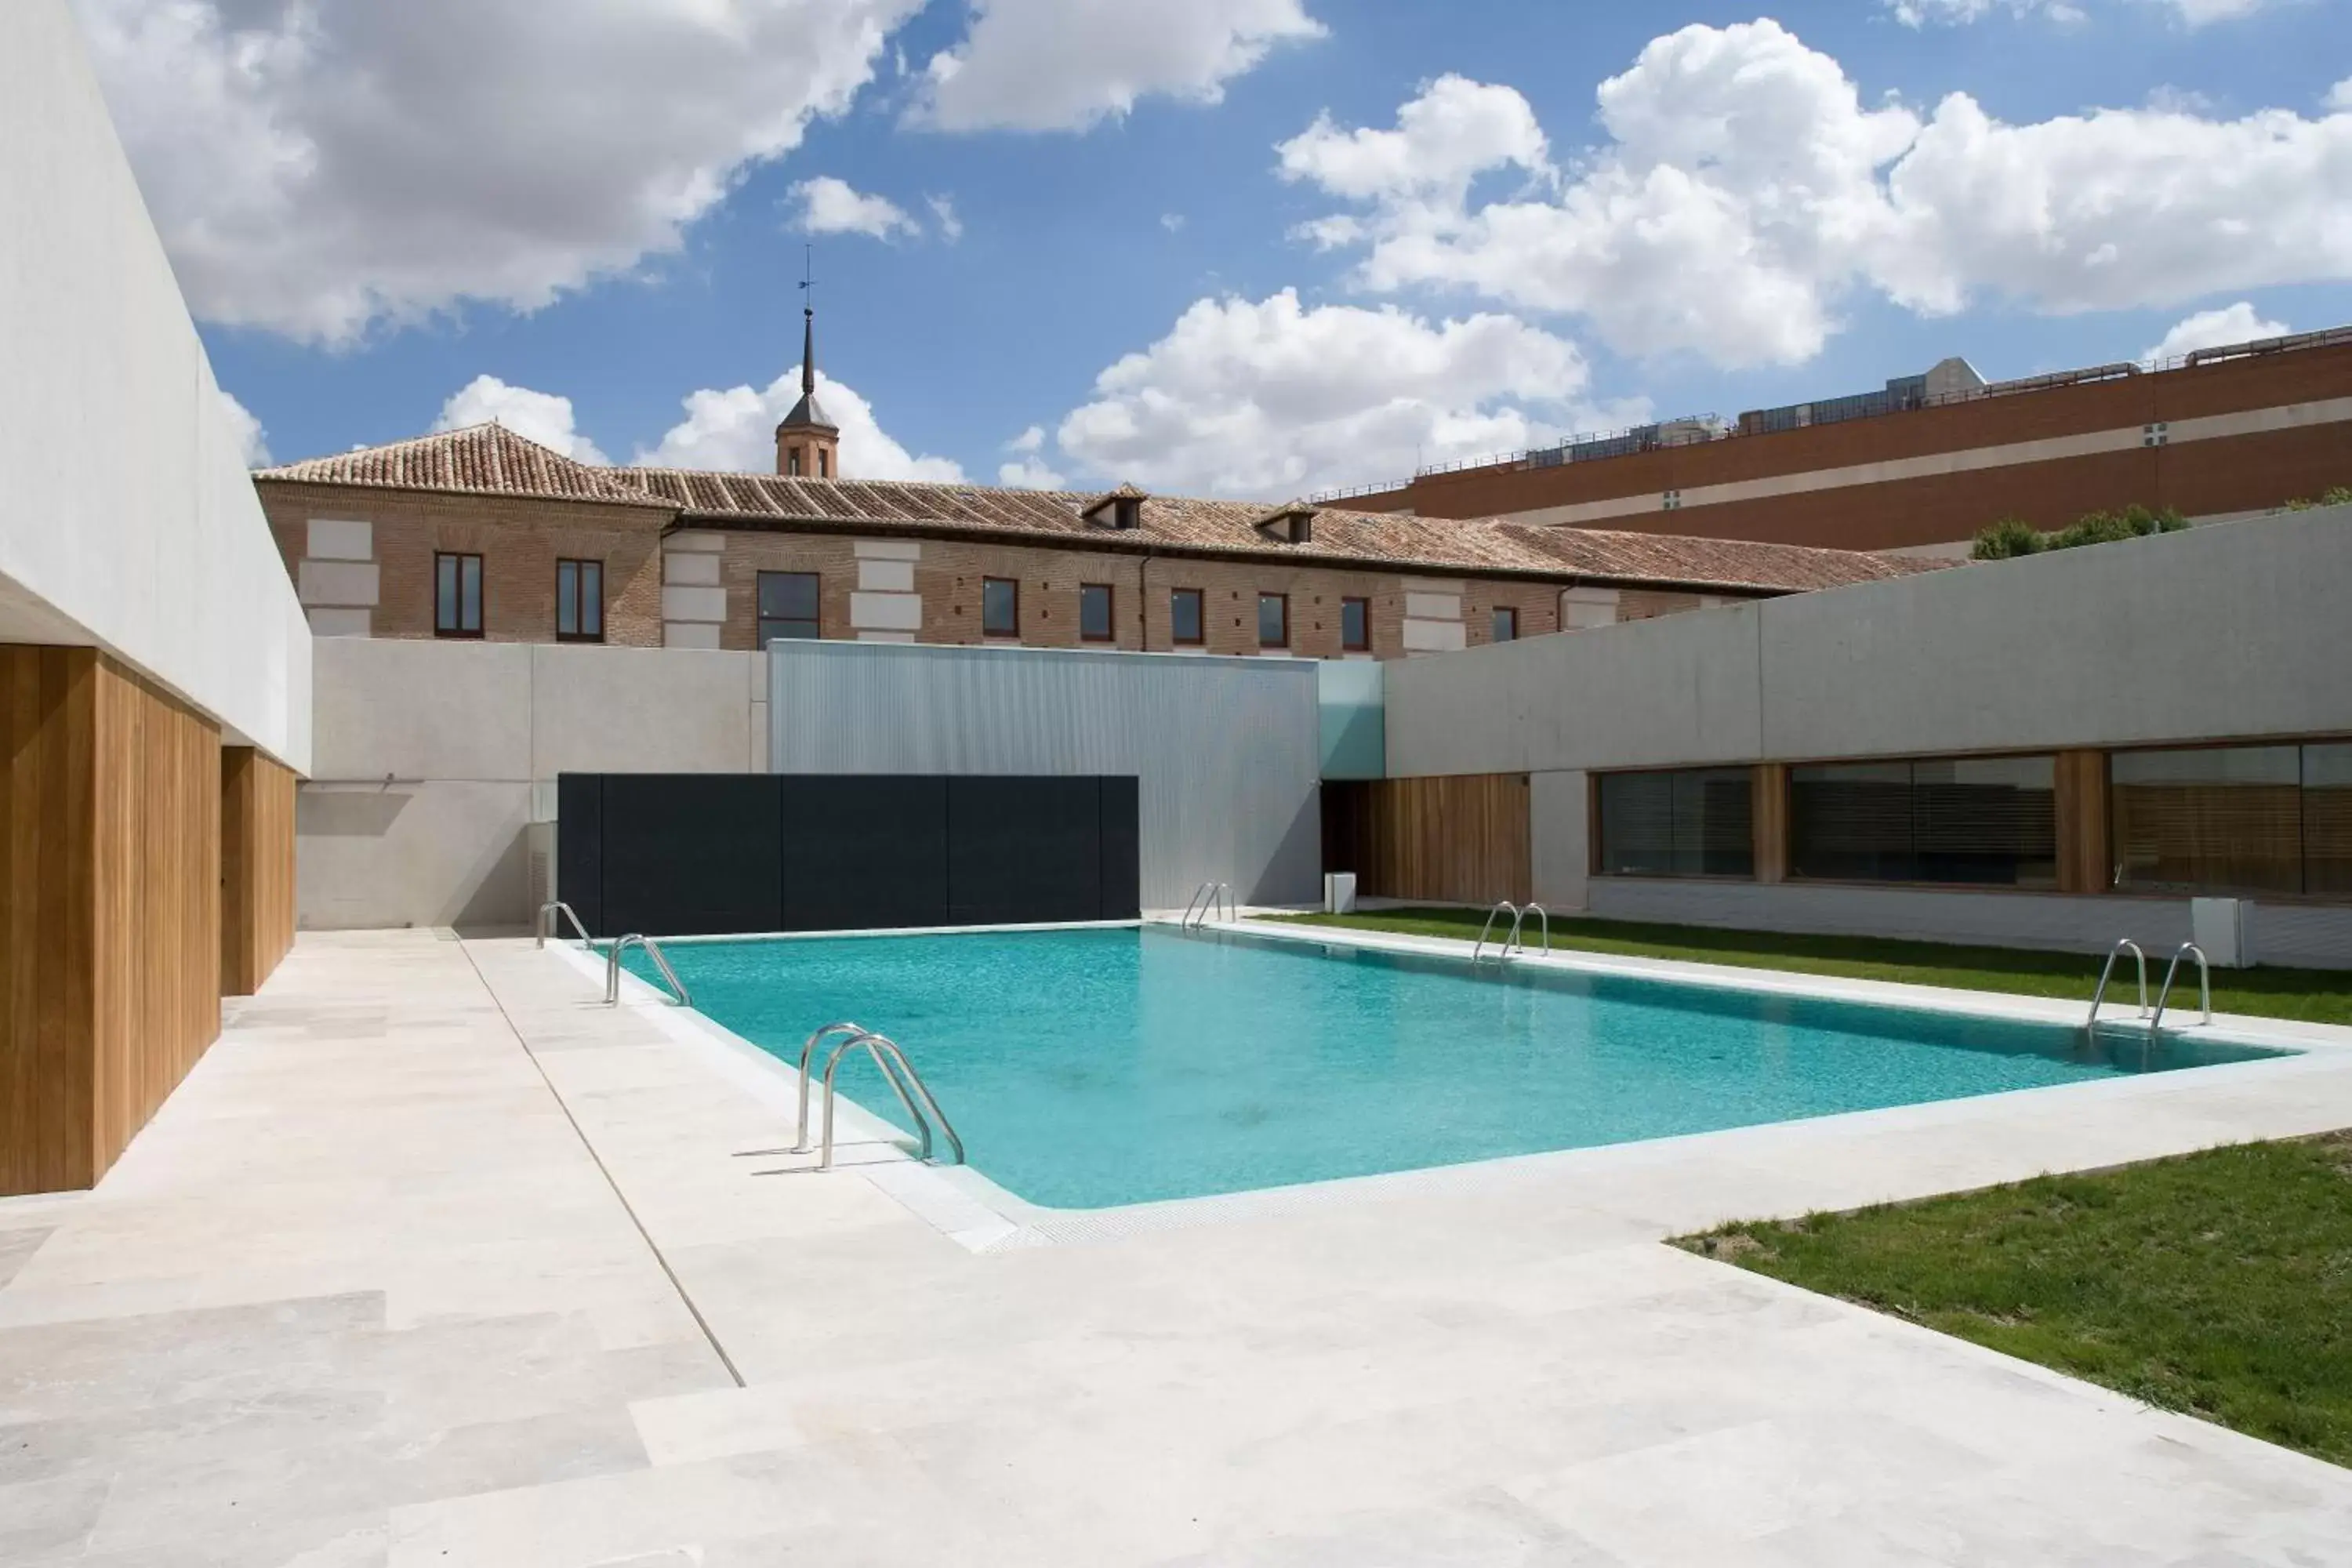 Swimming Pool in Parador de Alcalá de Henares